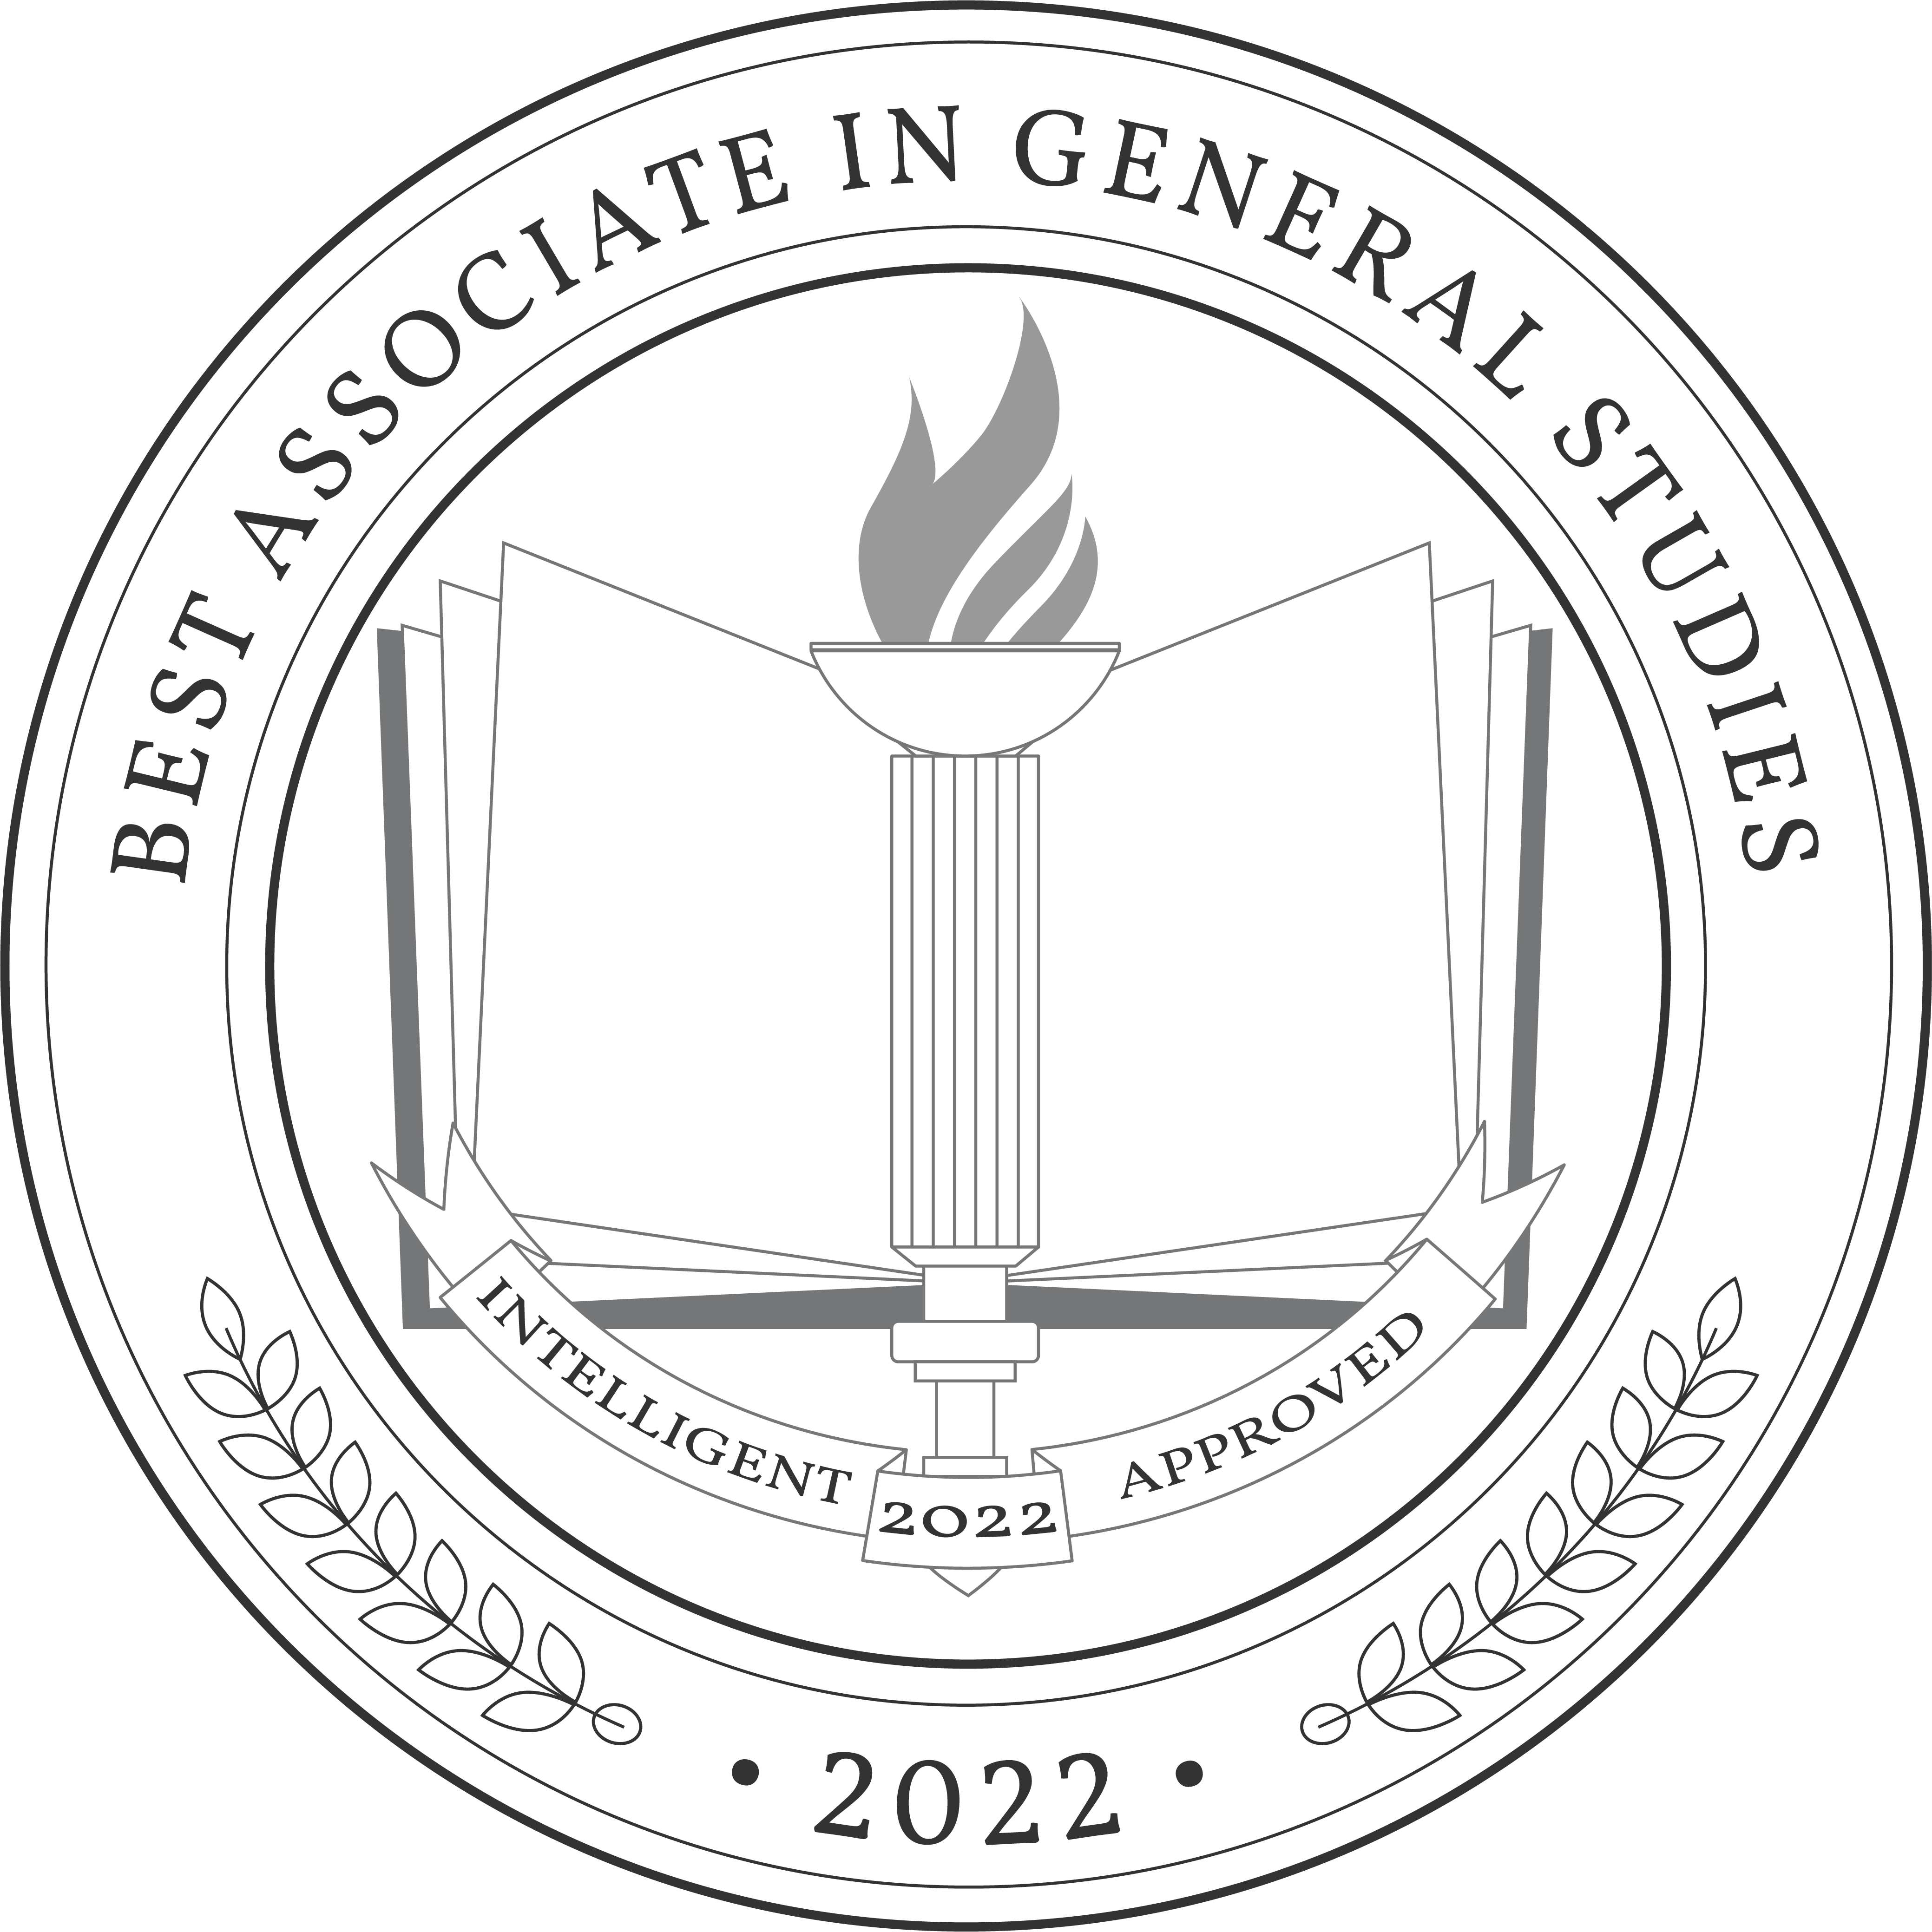 Best-Associate-in-General-Studies-Badge.png